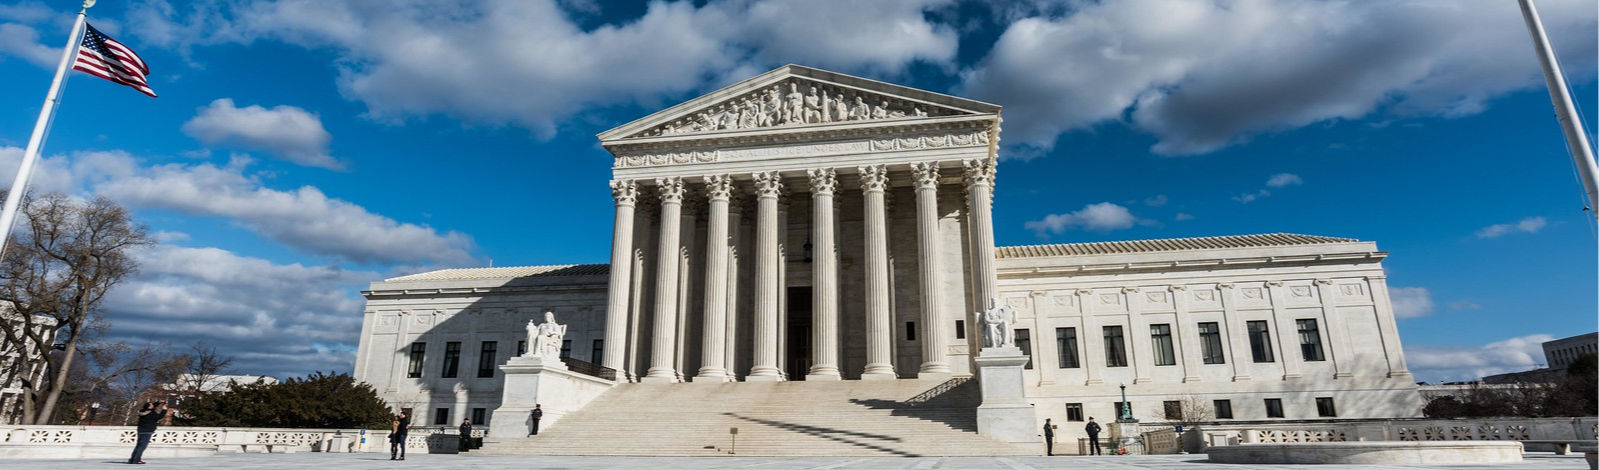 ‘Cidadãos de bem’: ultraconservadorismo e corrupção conduzem Suprema Corte dos EUA